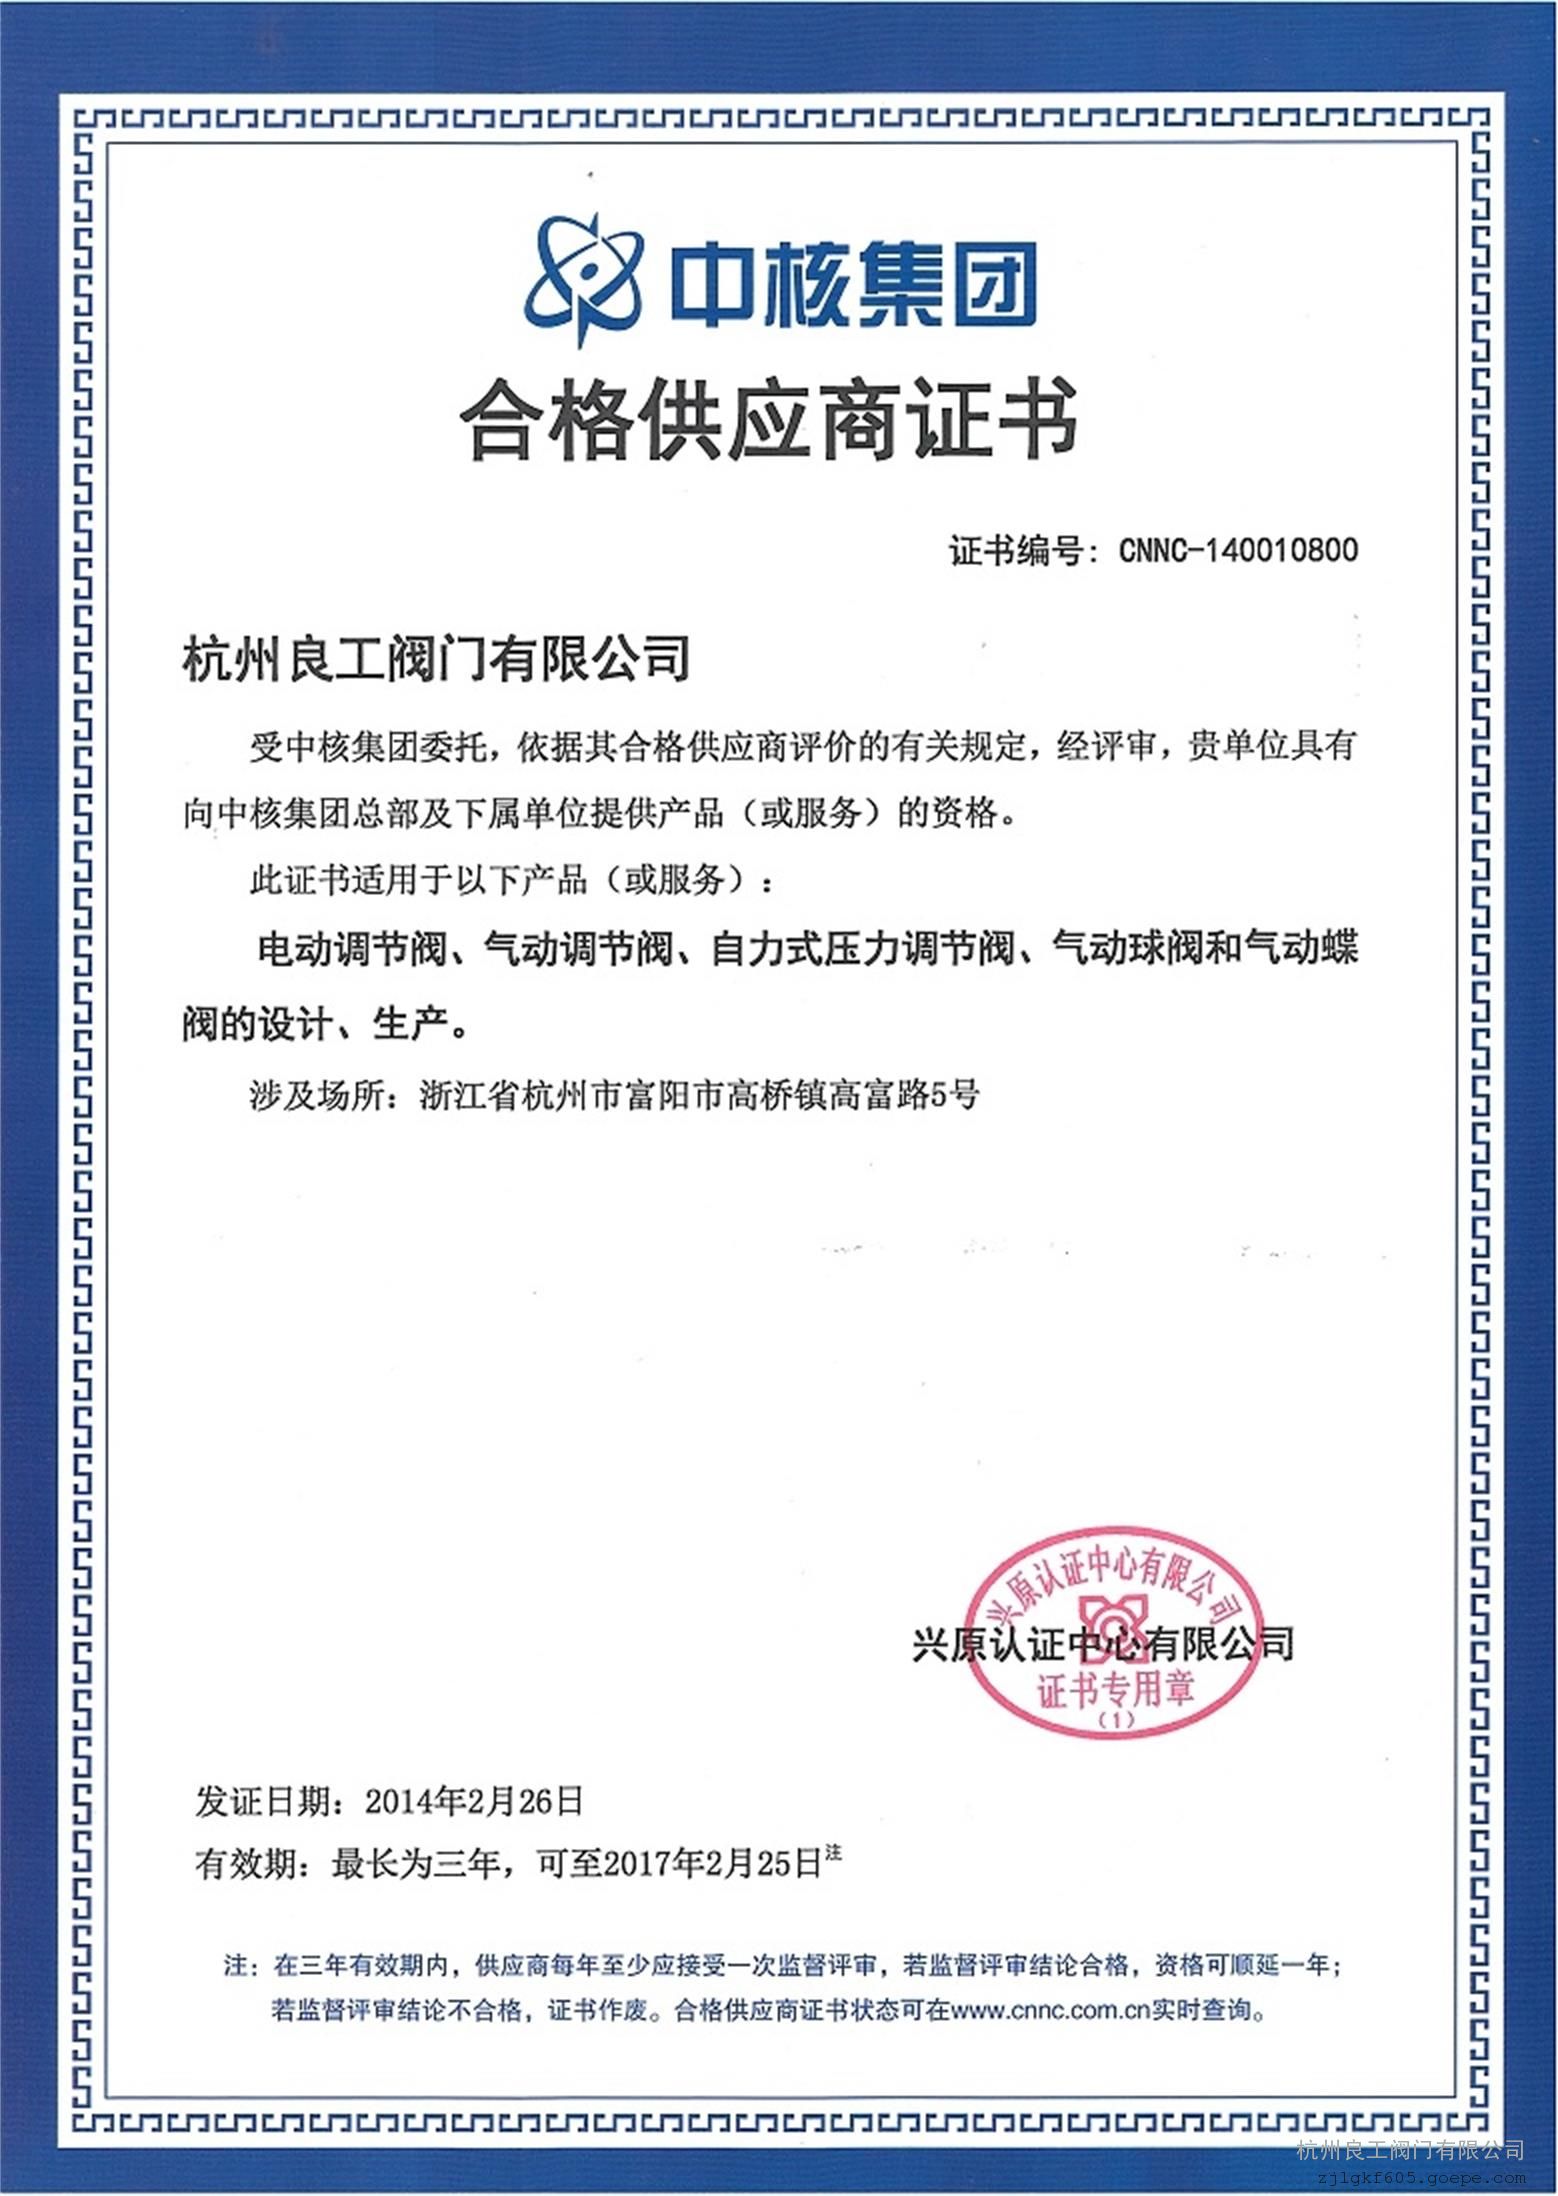 中核集团合格供应商证书 兴原认证中心有限公司 2014-02-26 2017-02